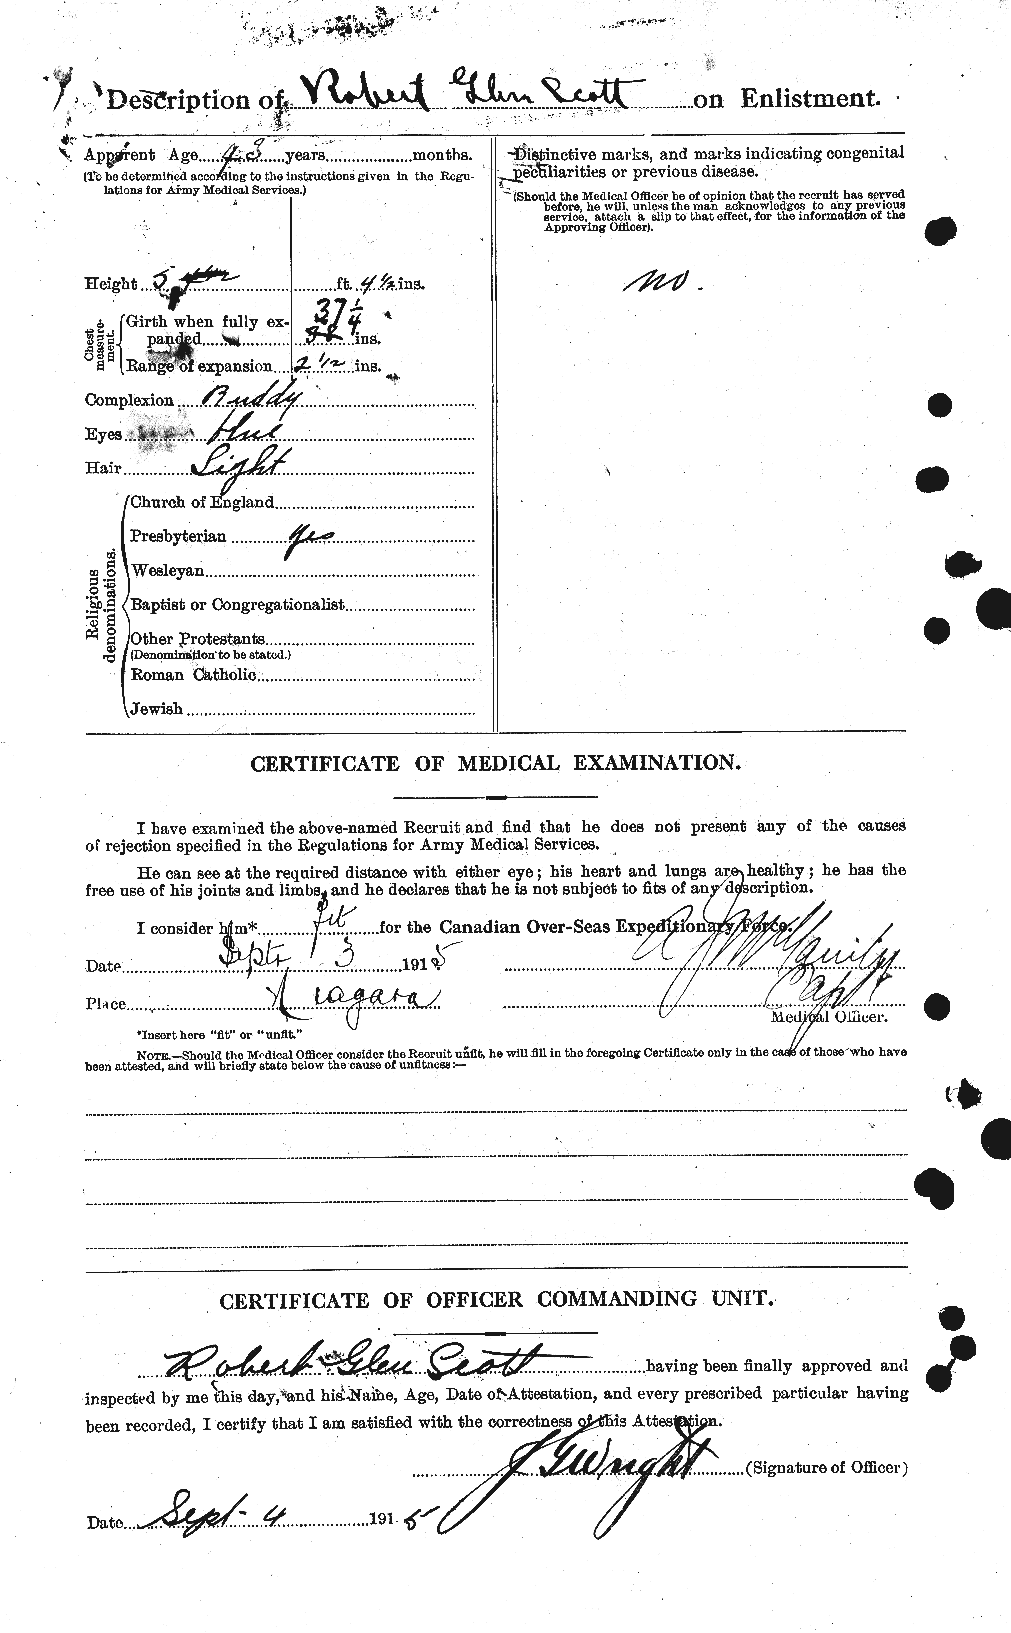 Dossiers du Personnel de la Première Guerre mondiale - CEC 089143b